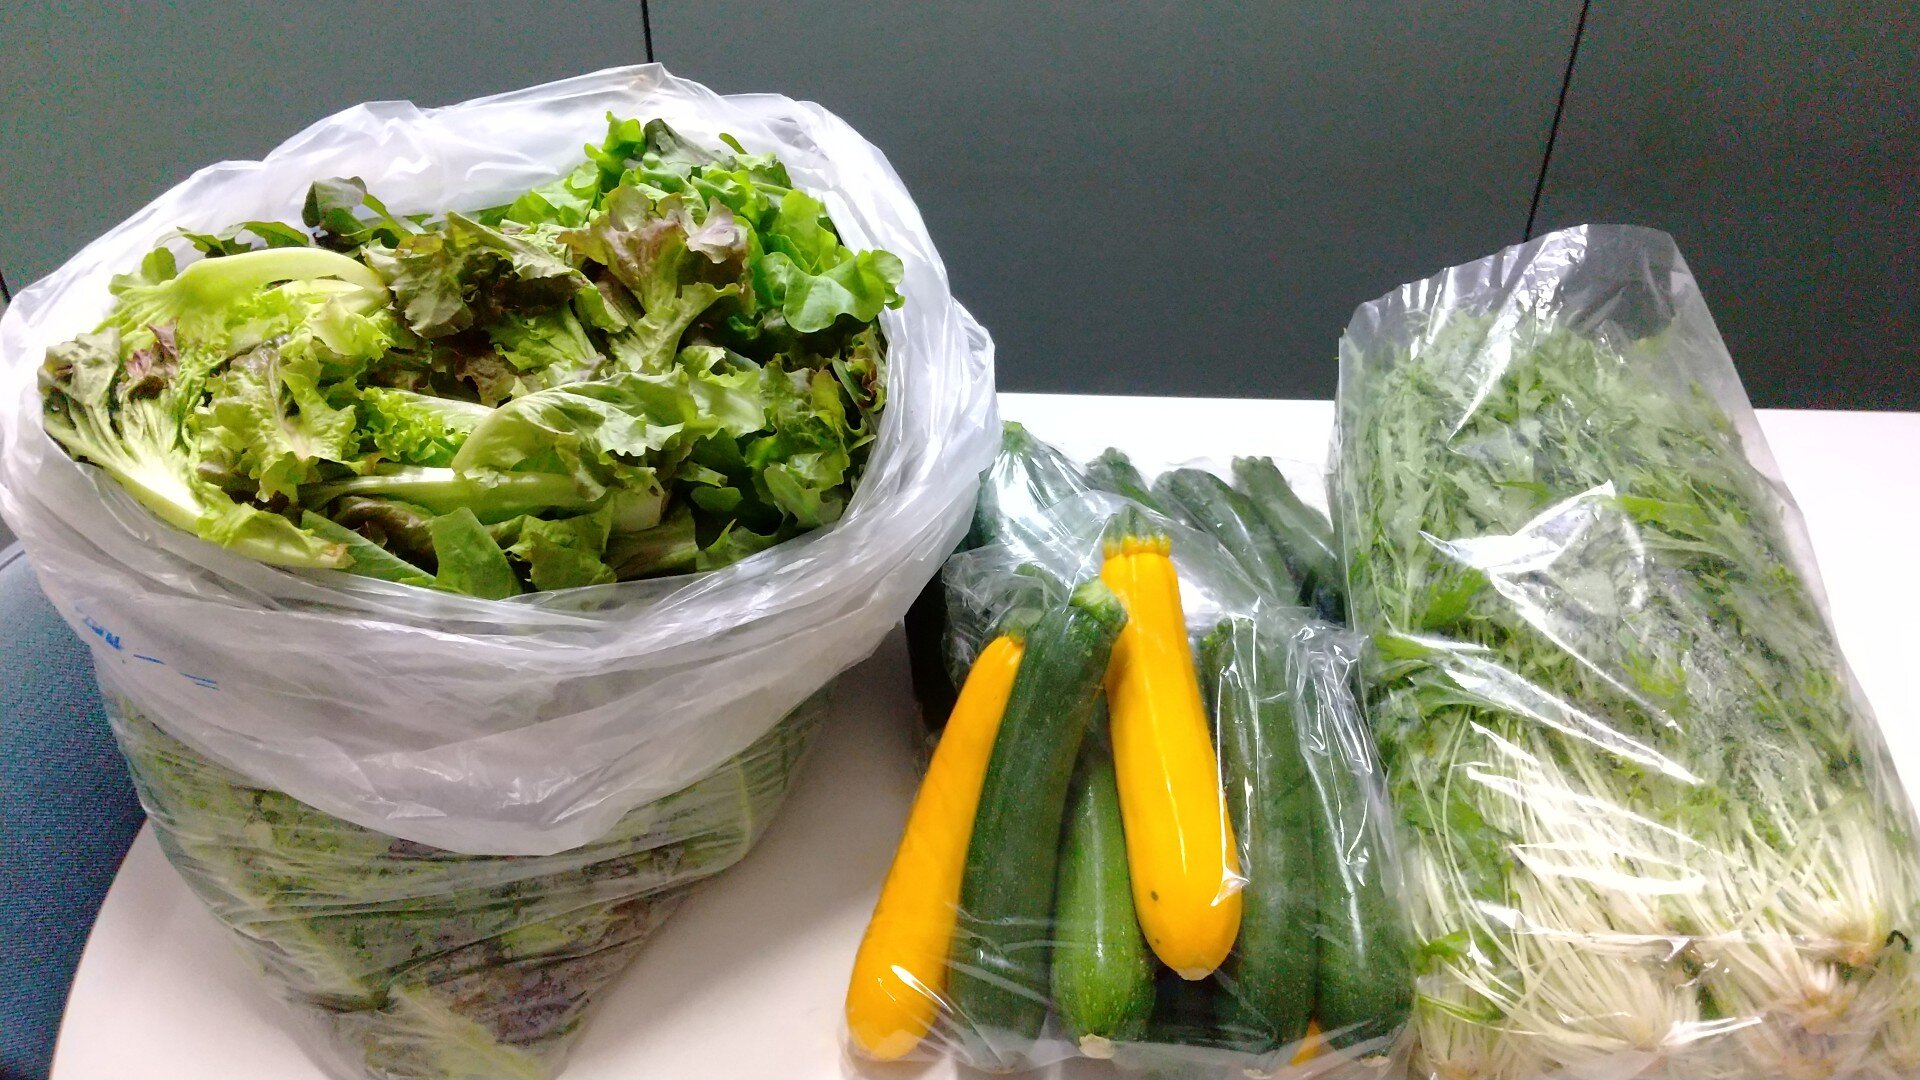 高橋様のご厚意により、会津大学留学生に新鮮な野菜が届けられました。